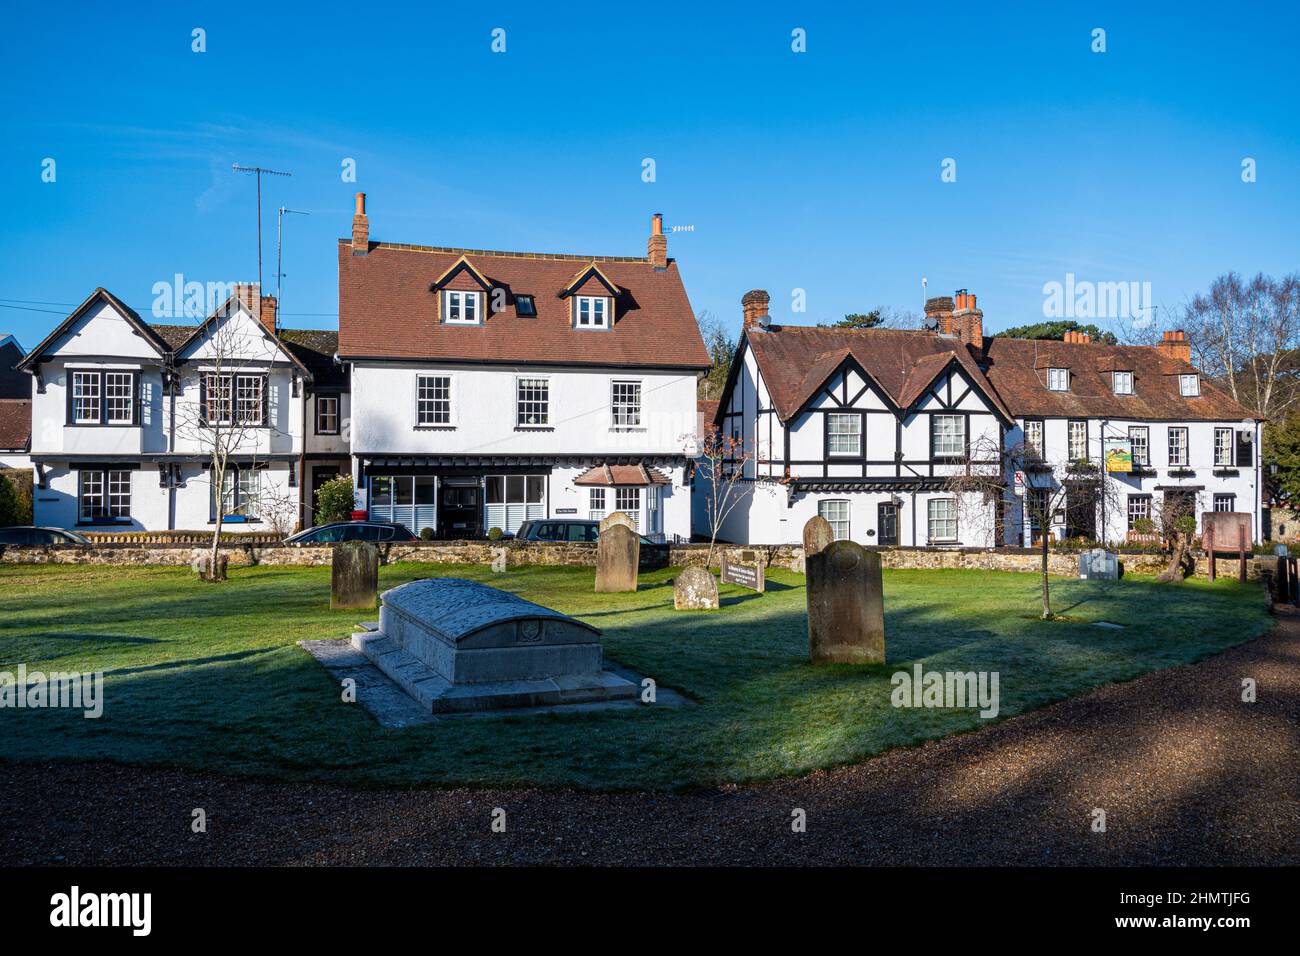 Le joli village de Mickleham à Surrey, vu du chantier naval, Angleterre, Royaume-Uni, lors d'une journée d'hiver ensoleillée avec un ciel bleu Banque D'Images